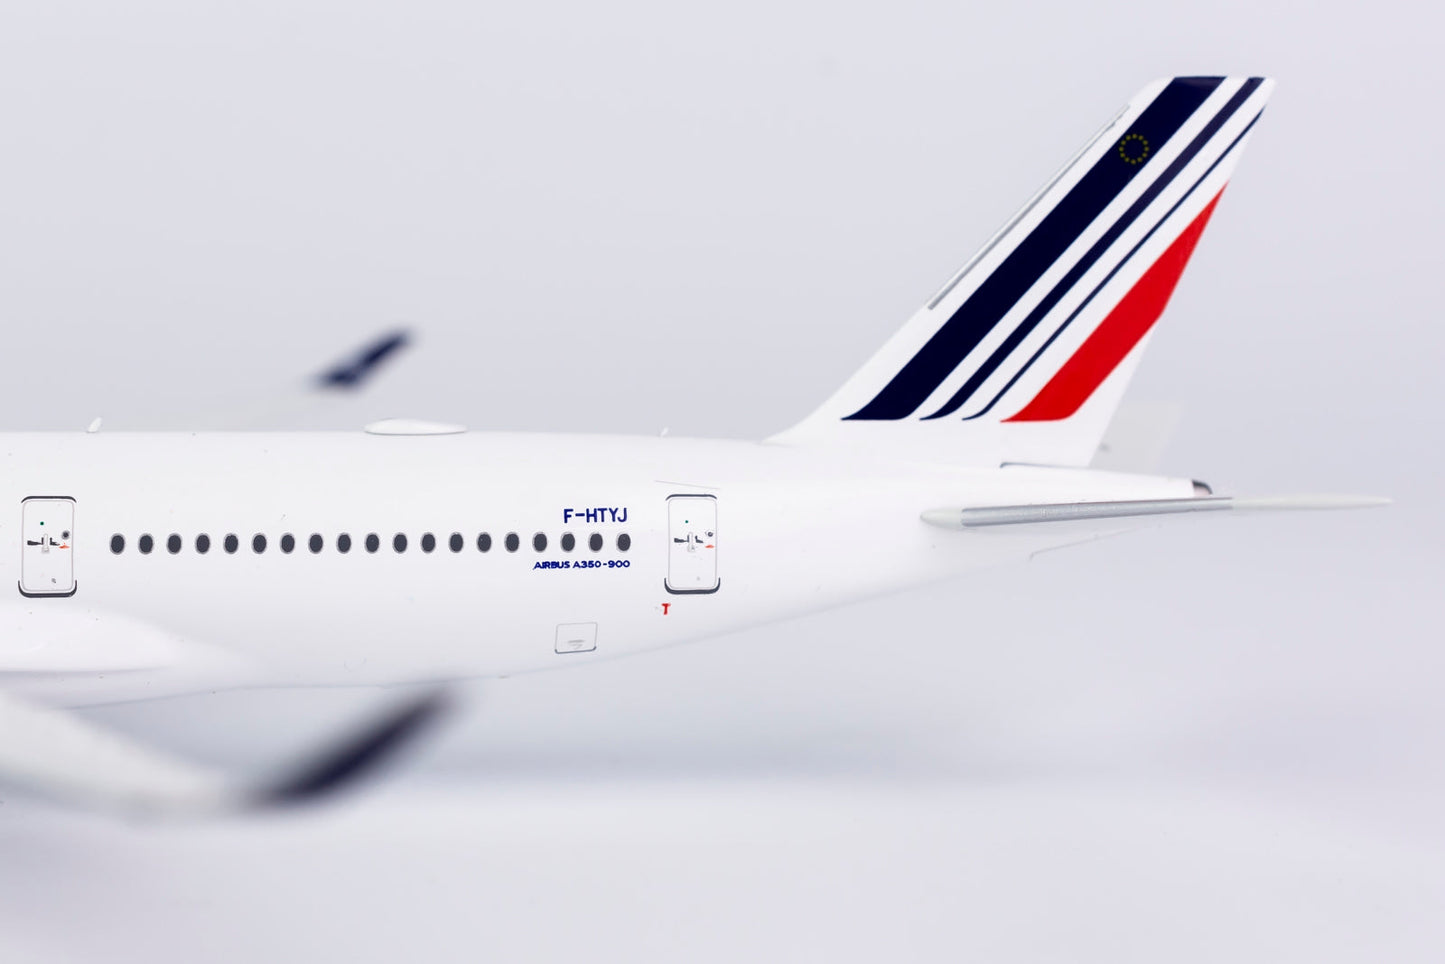 1/400 Air France A350-900 NG Models 39026